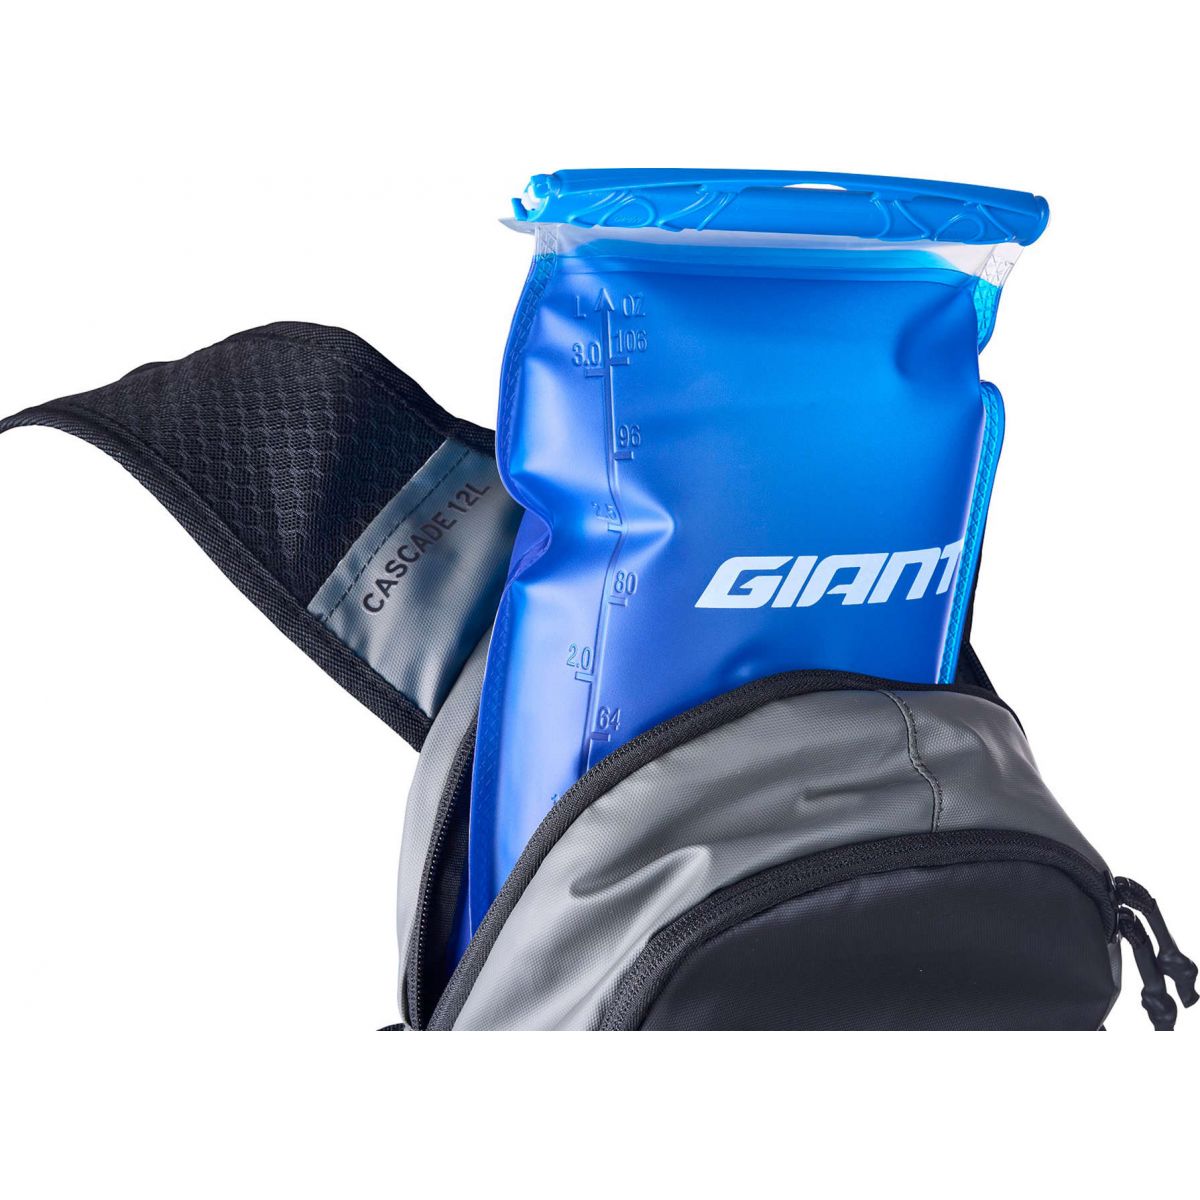 bolsa de agua de 3 litros de Mochila de hidratación de bicicleta mtb Giant Cascade 12 litros | VH4600005 color gris